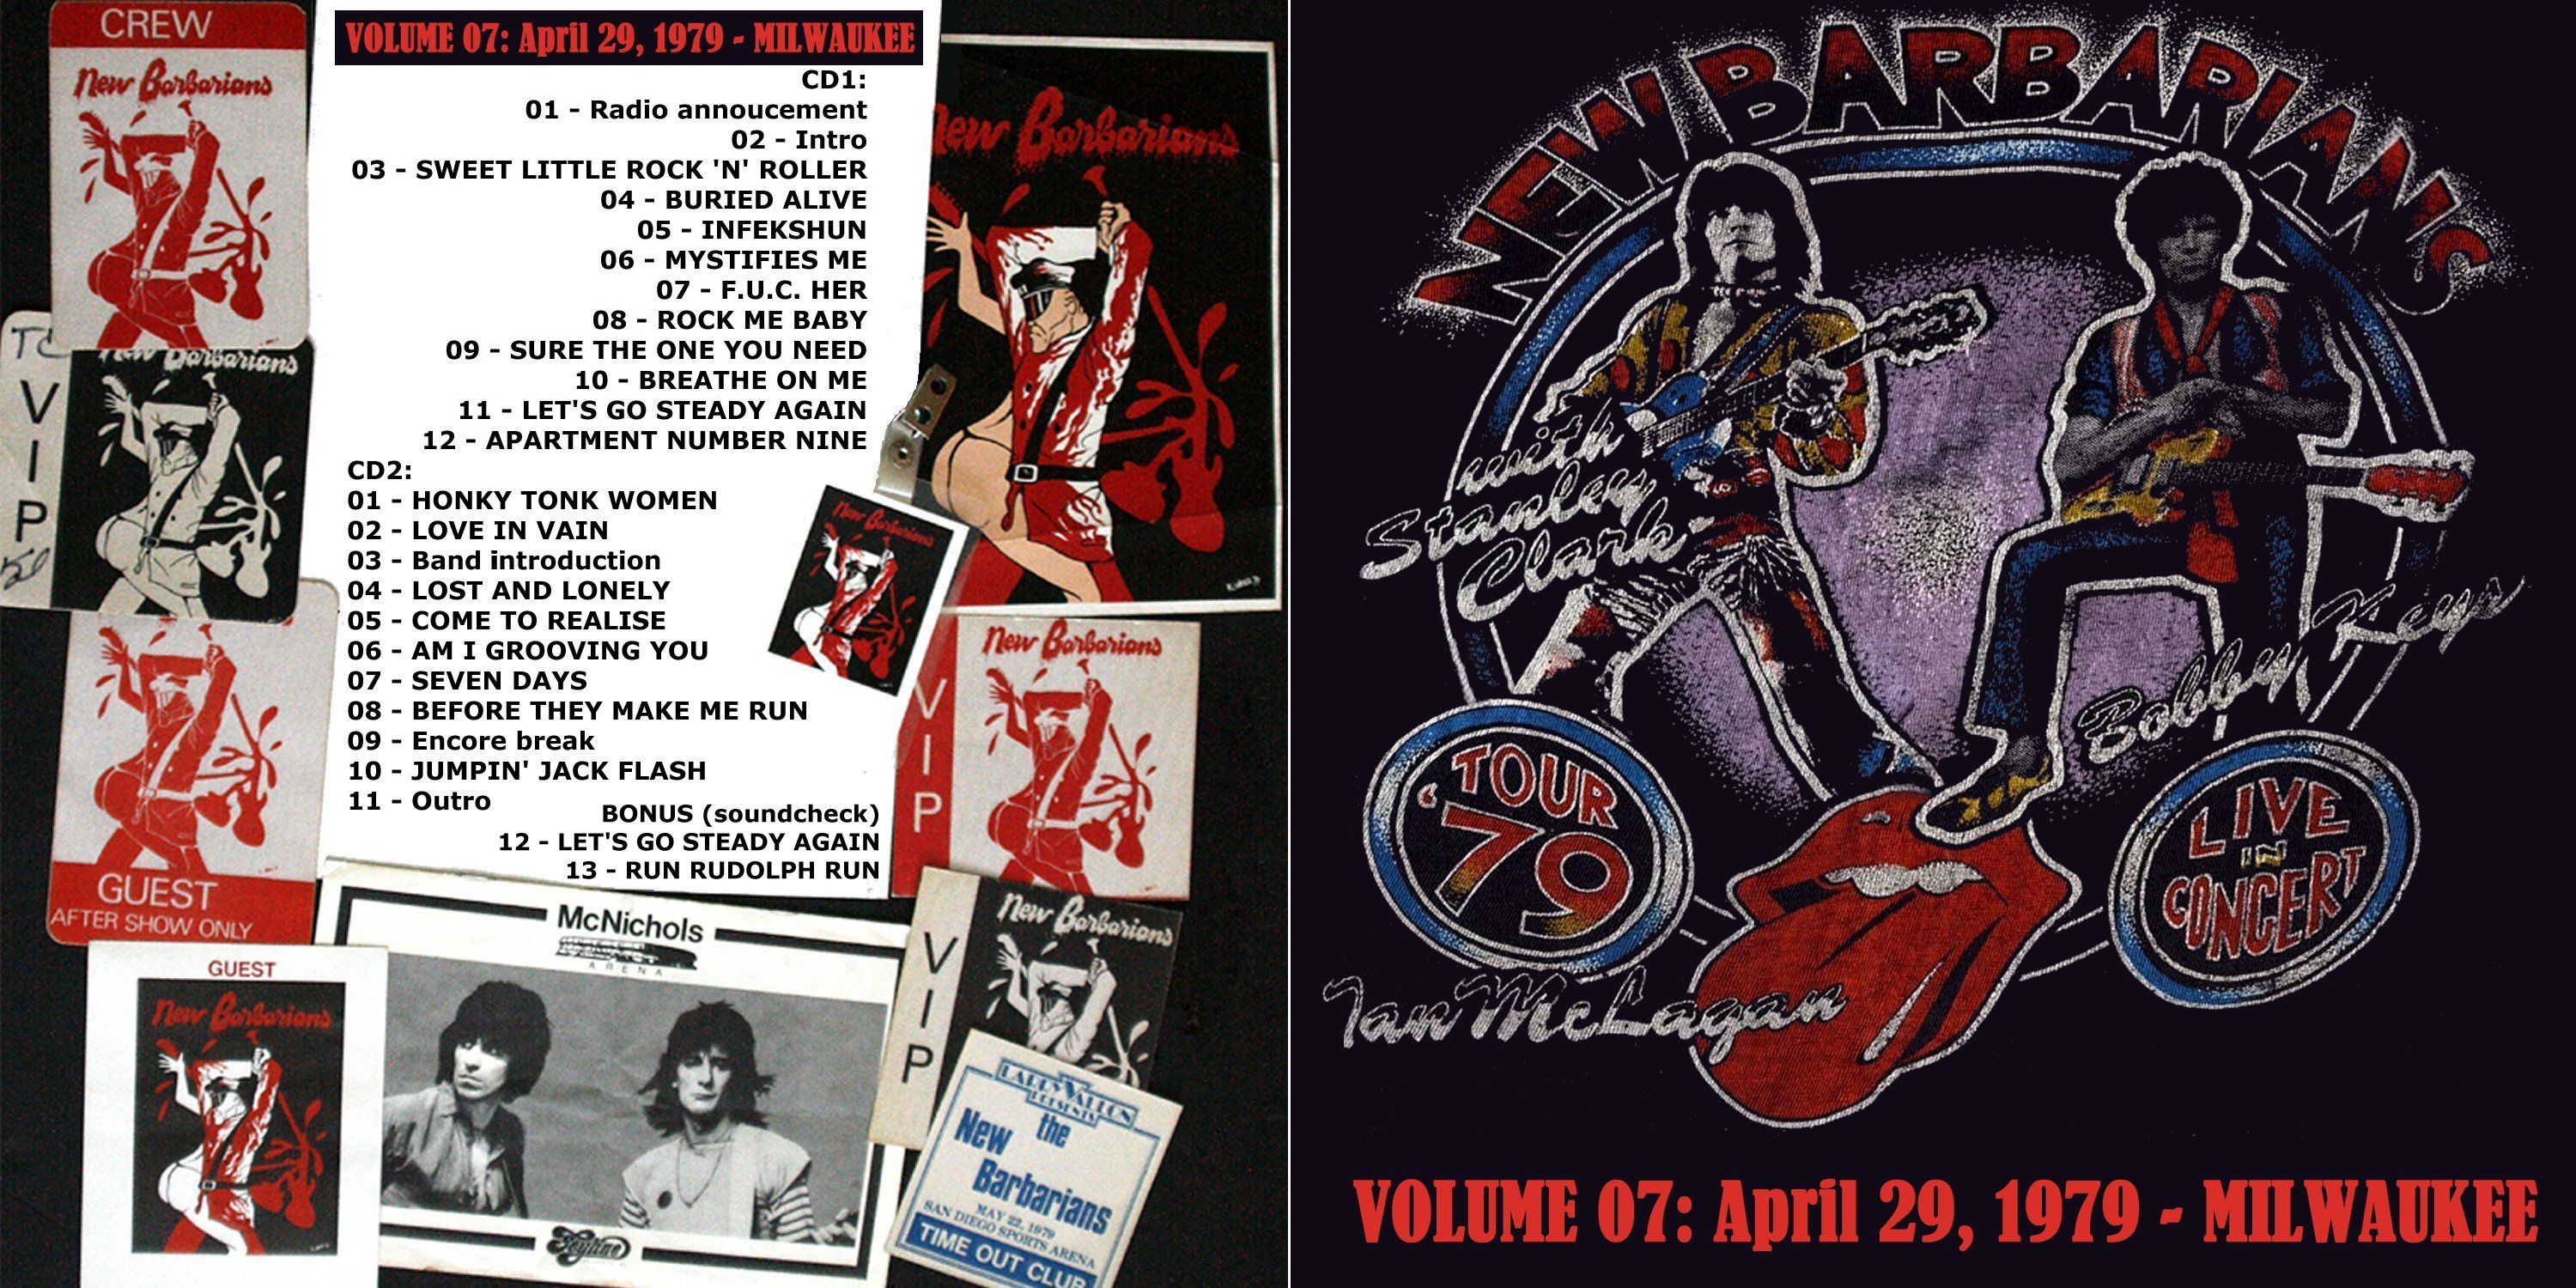 NewBarbarians1979-04-29MilwaukeeArenaWIVol7 (1).jpg